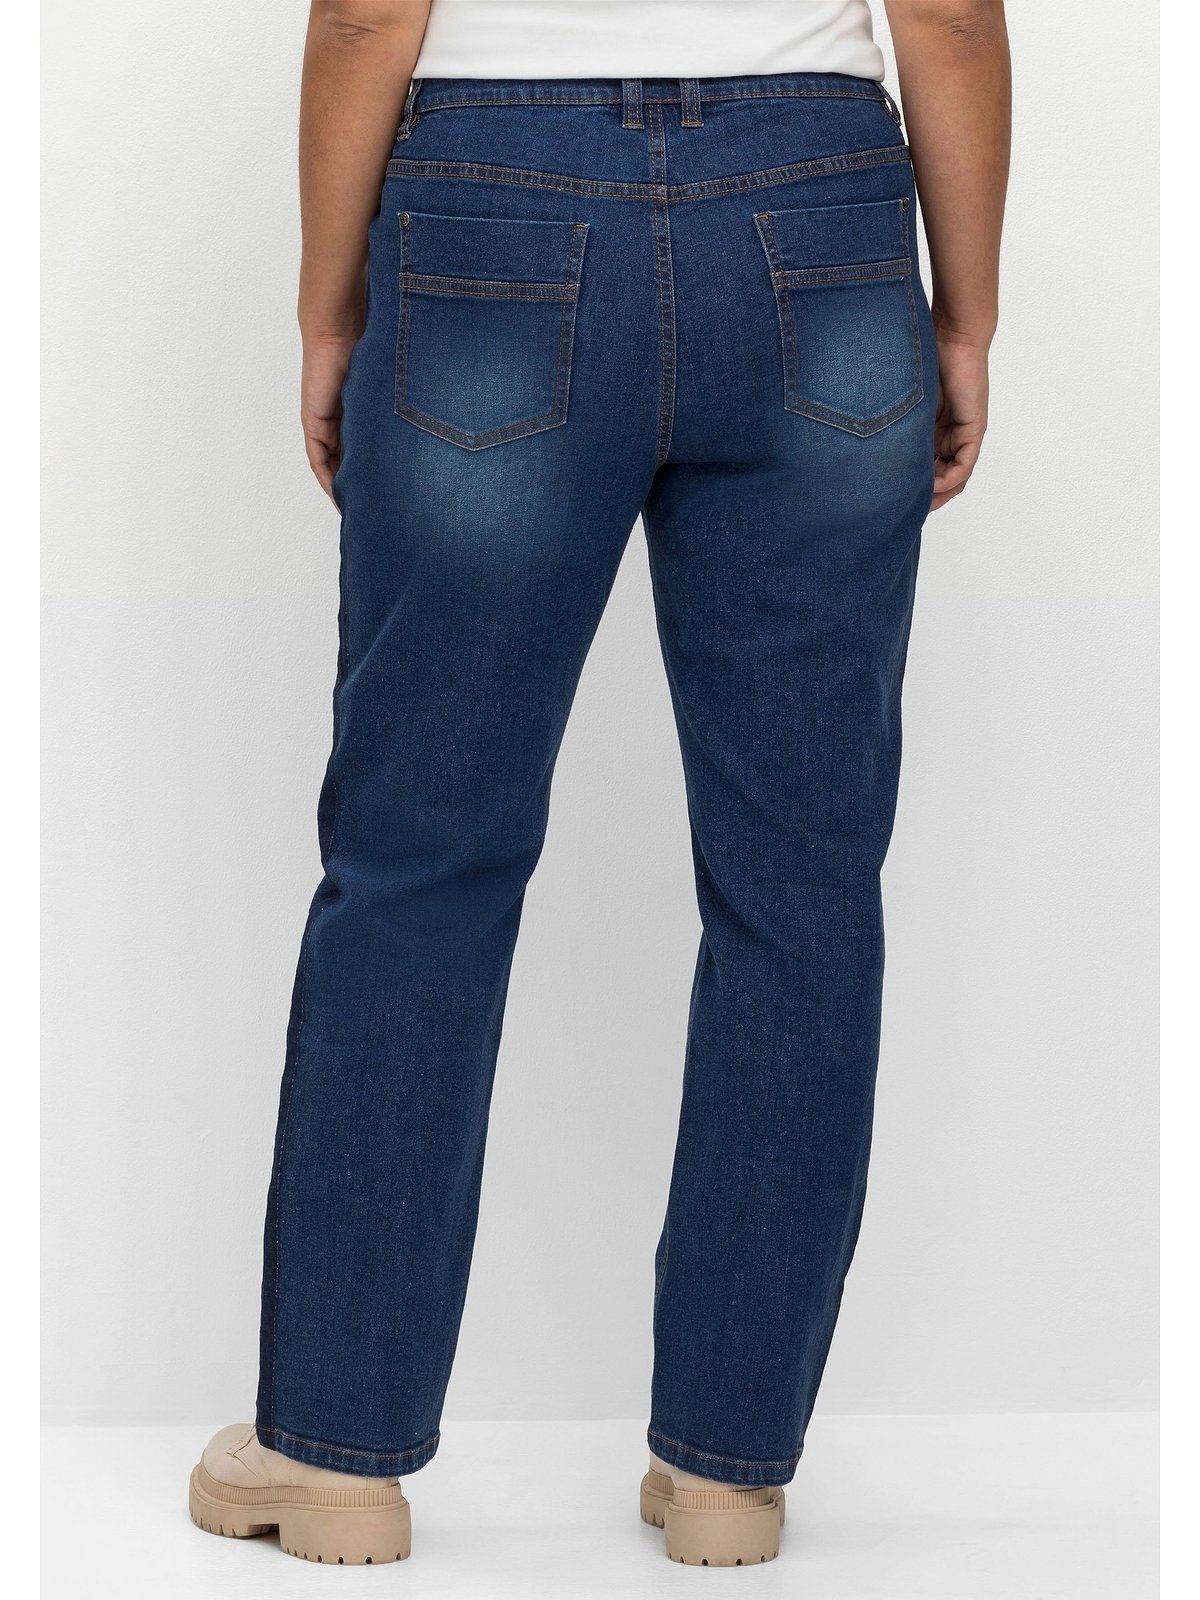 Sheego Gerade Jeans Große Größen in dunkler sehr PIA für Oberschenkel, Gerade Beinform, Galonstreifen kräftige Waschung